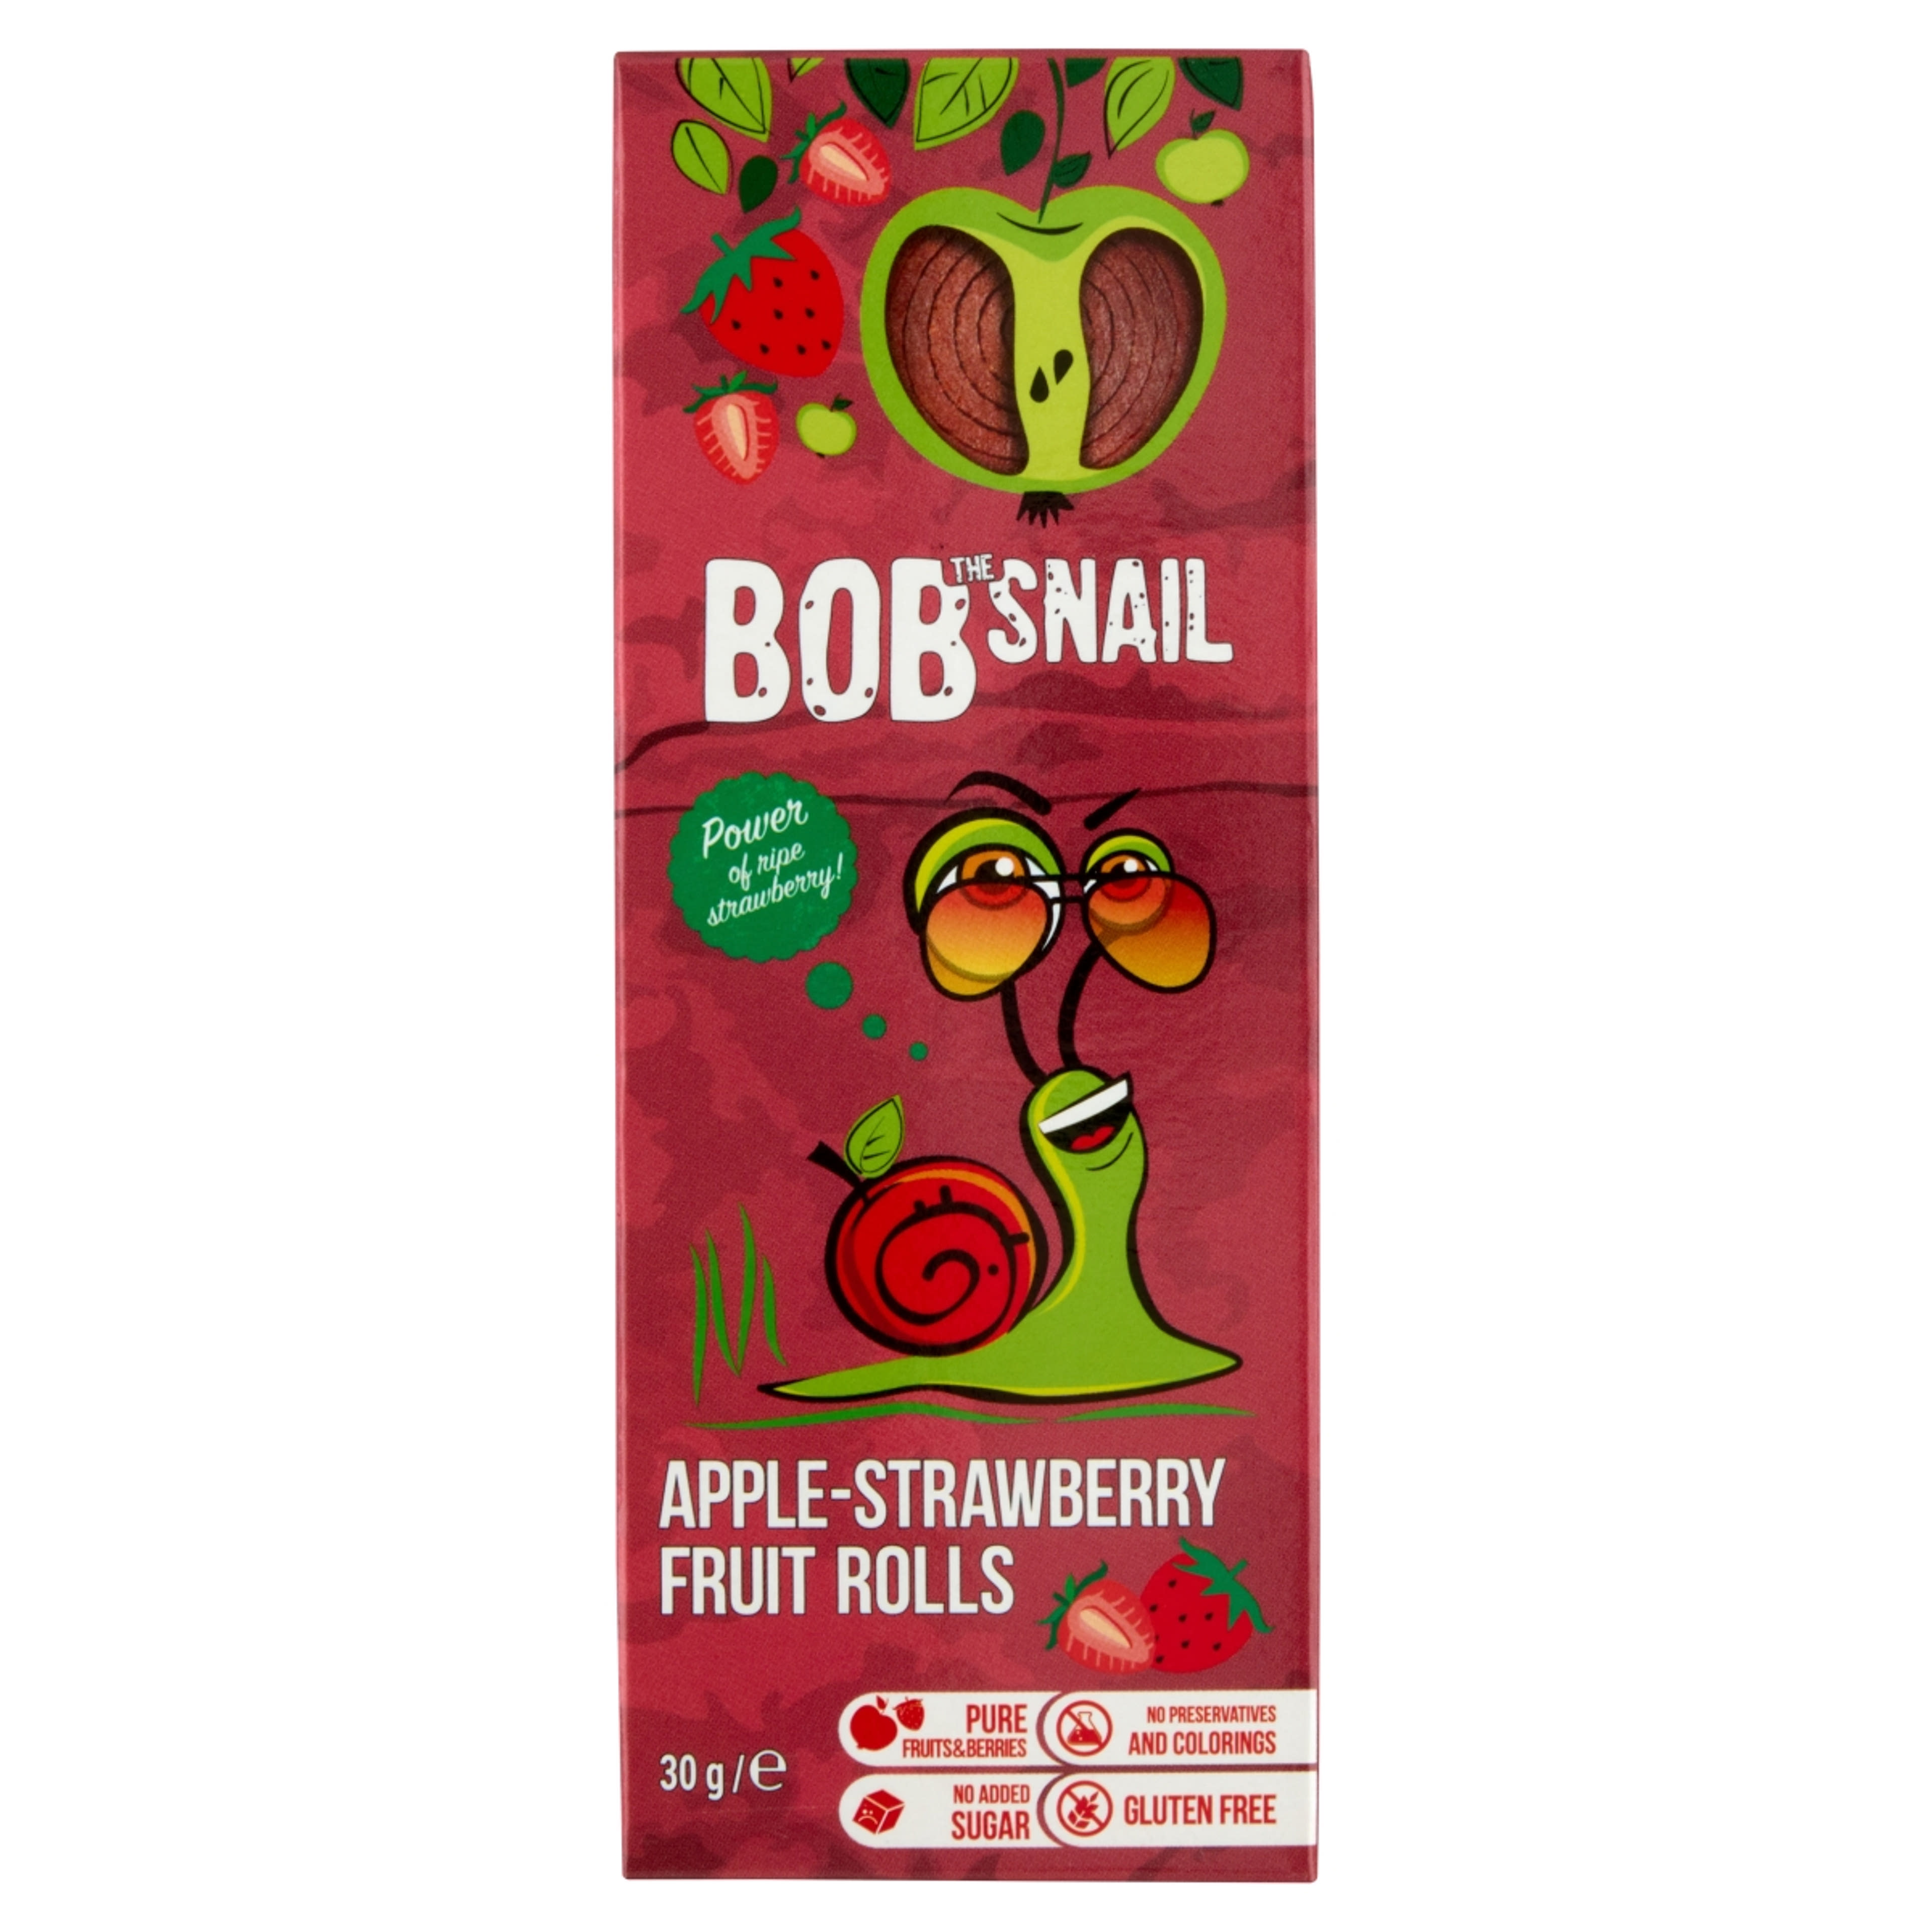 Bob Snail alma-eper rolls - 30 g